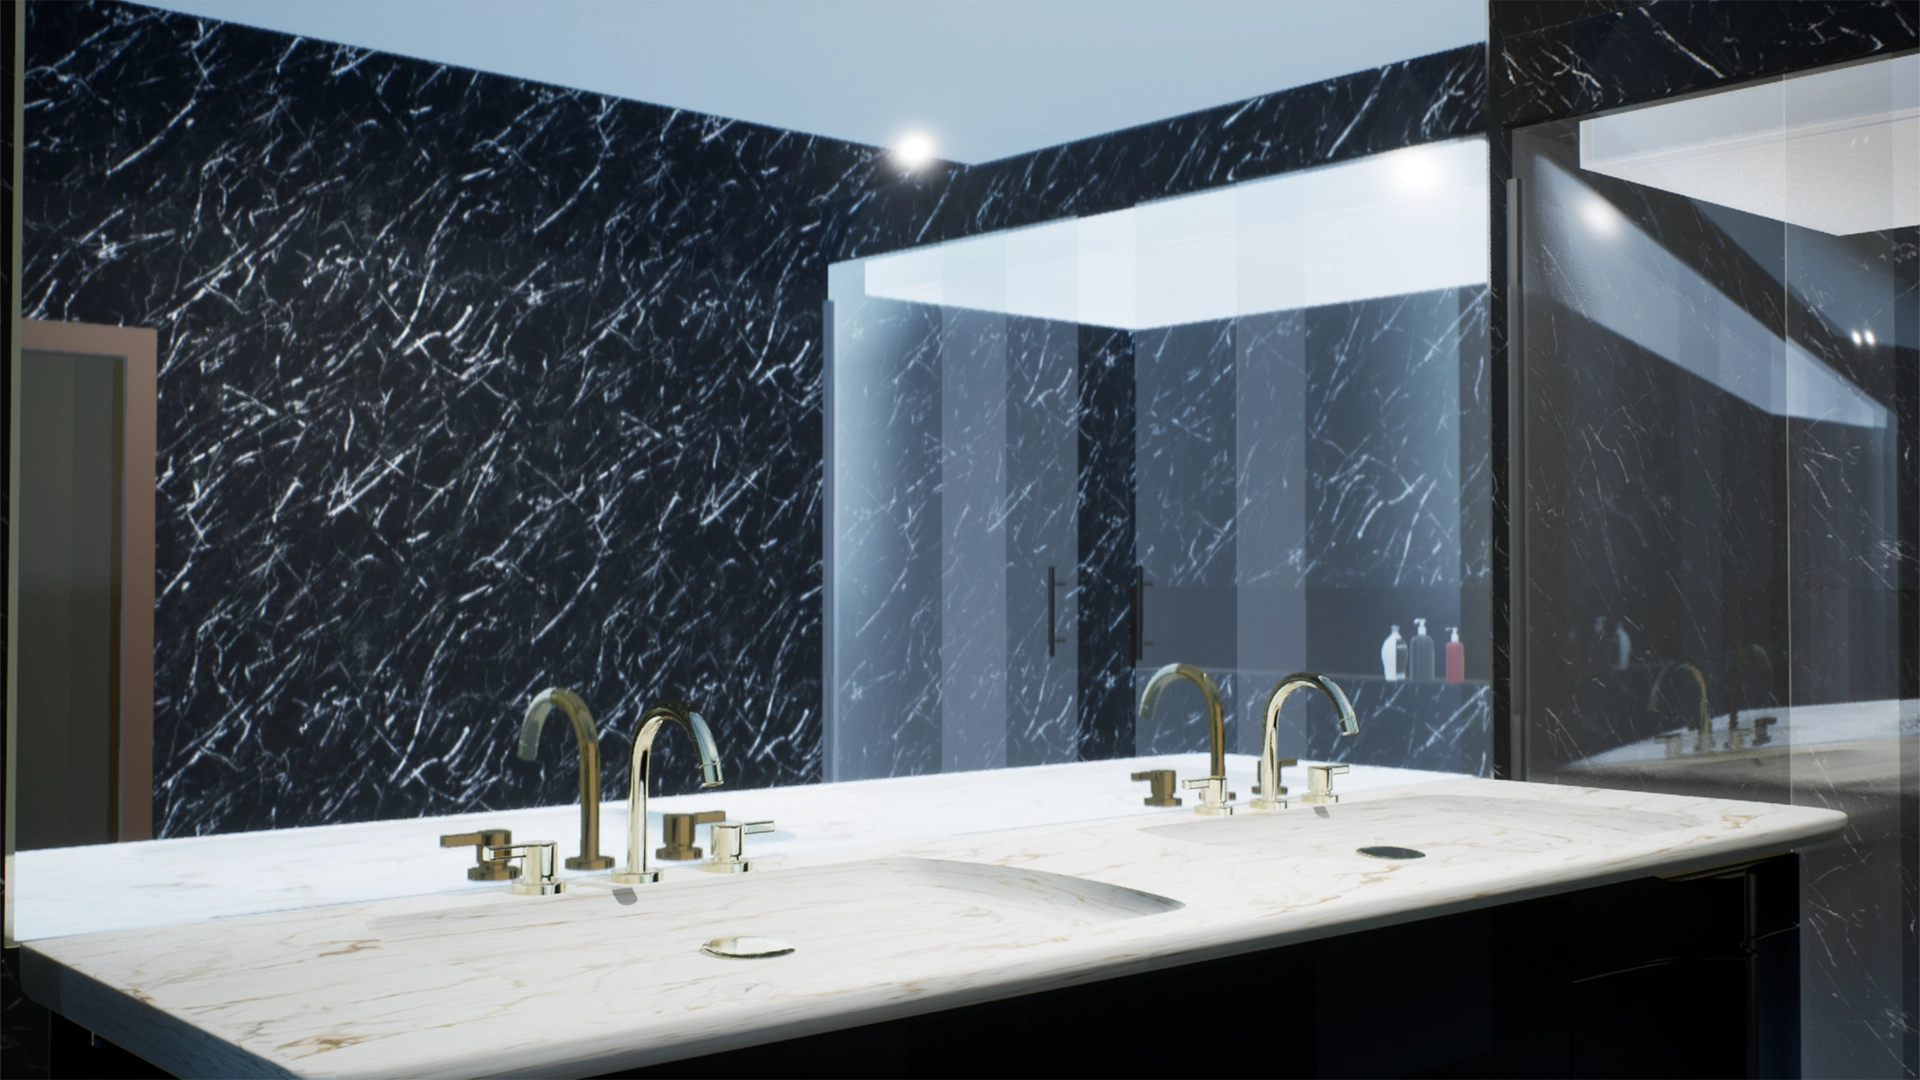 Vista di un bagno in marmo scuro in contrasto con dettagli bianco e oro, che da su due lavandini su unico piano con specchio a parete che mostra un ampio box doccia vetrato